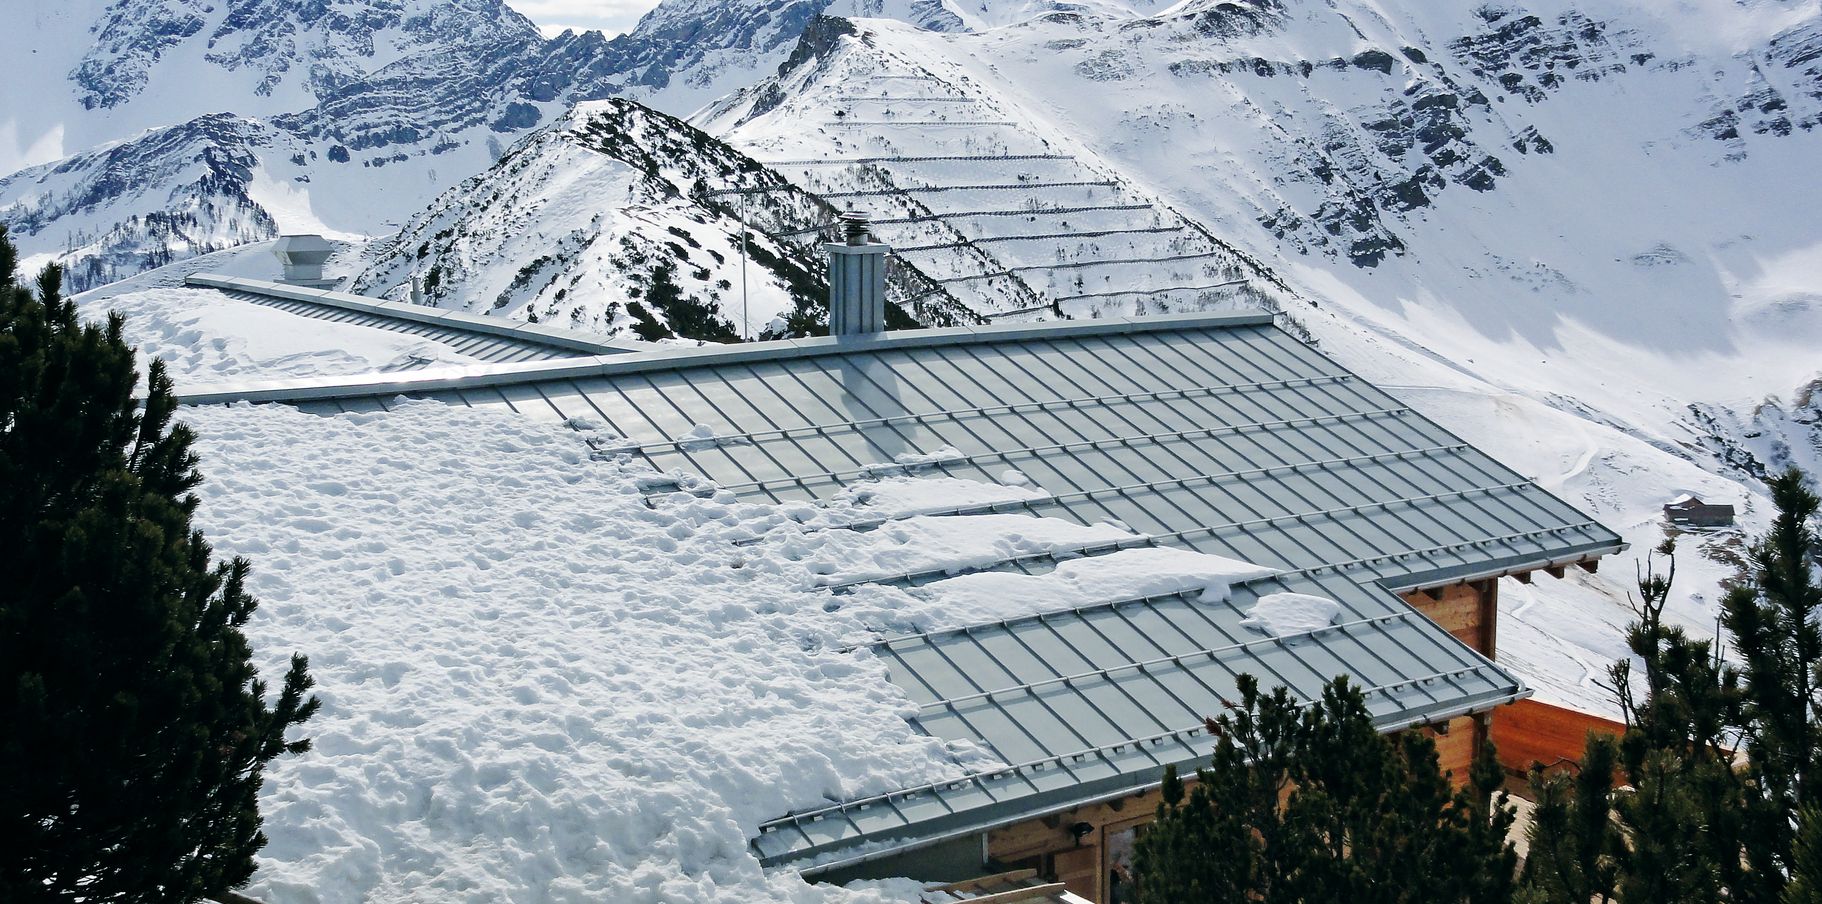 Dachfläche aus Zink in Schneelandschaft mit Schneestopp